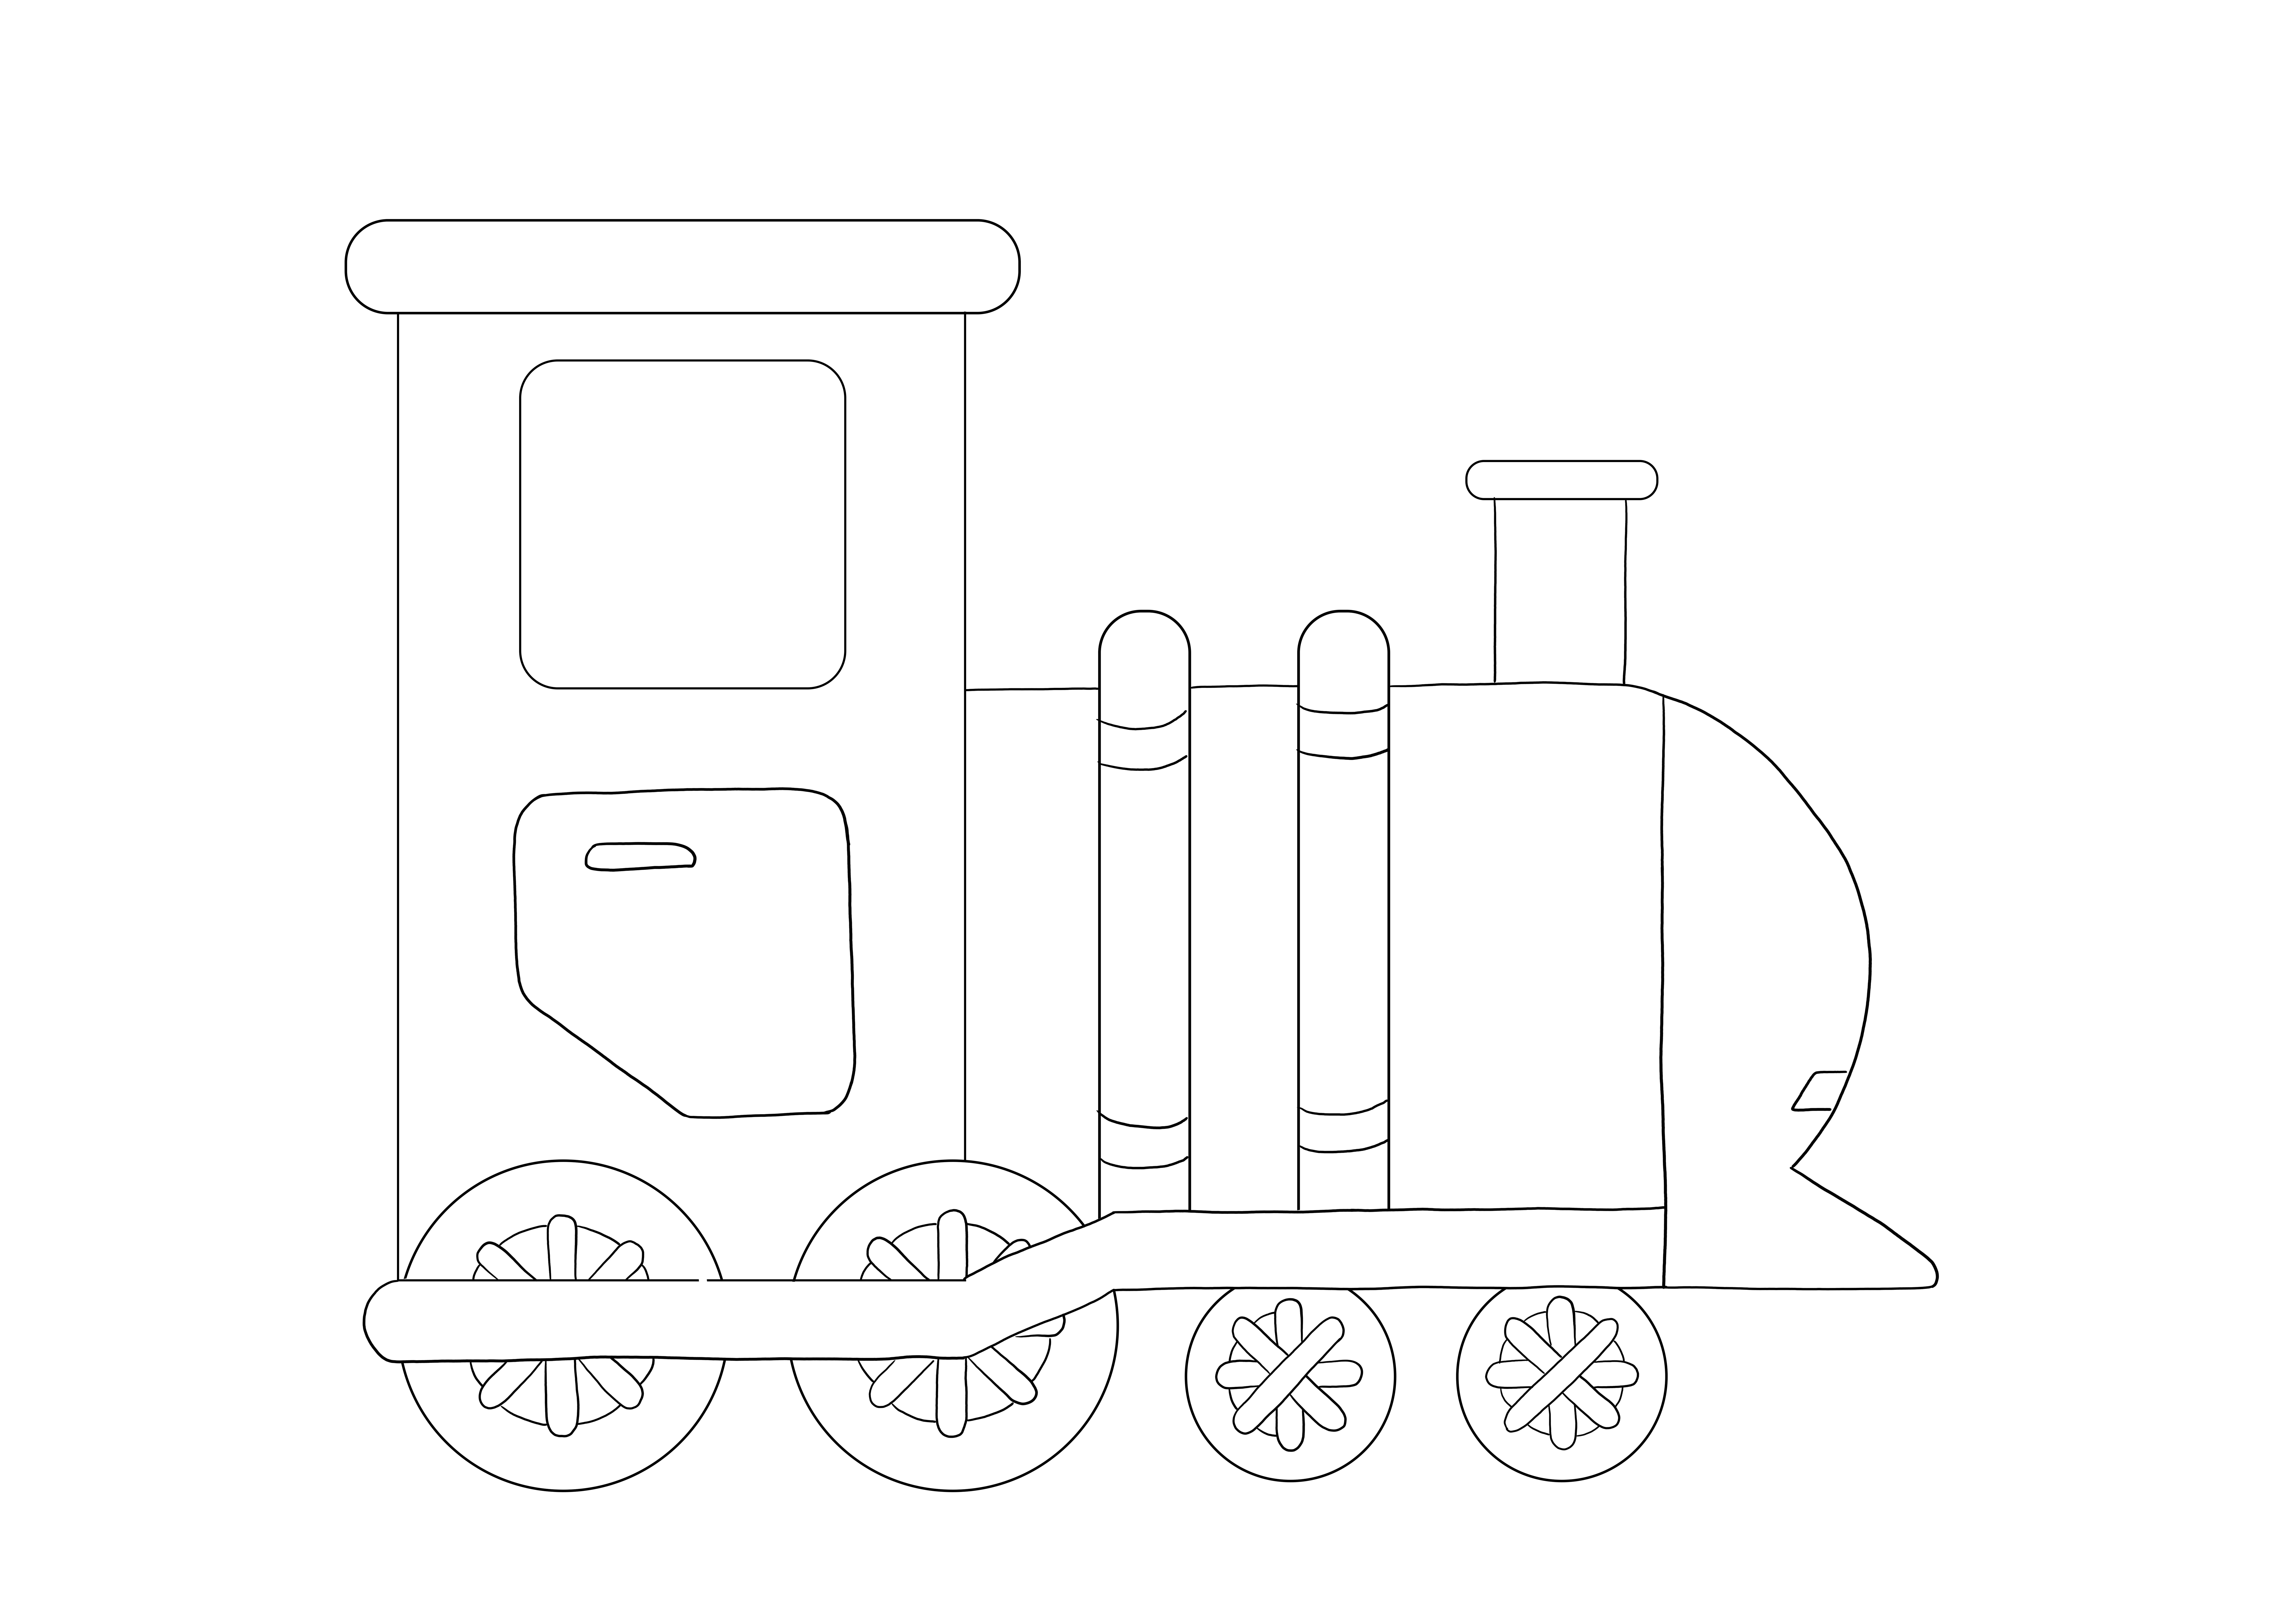 Polar Express -juna ilmainen tulostettava arkki kaikille junan ystäville tulostettavaksi tai tallennettavaksi myöhempää käyttöä varten